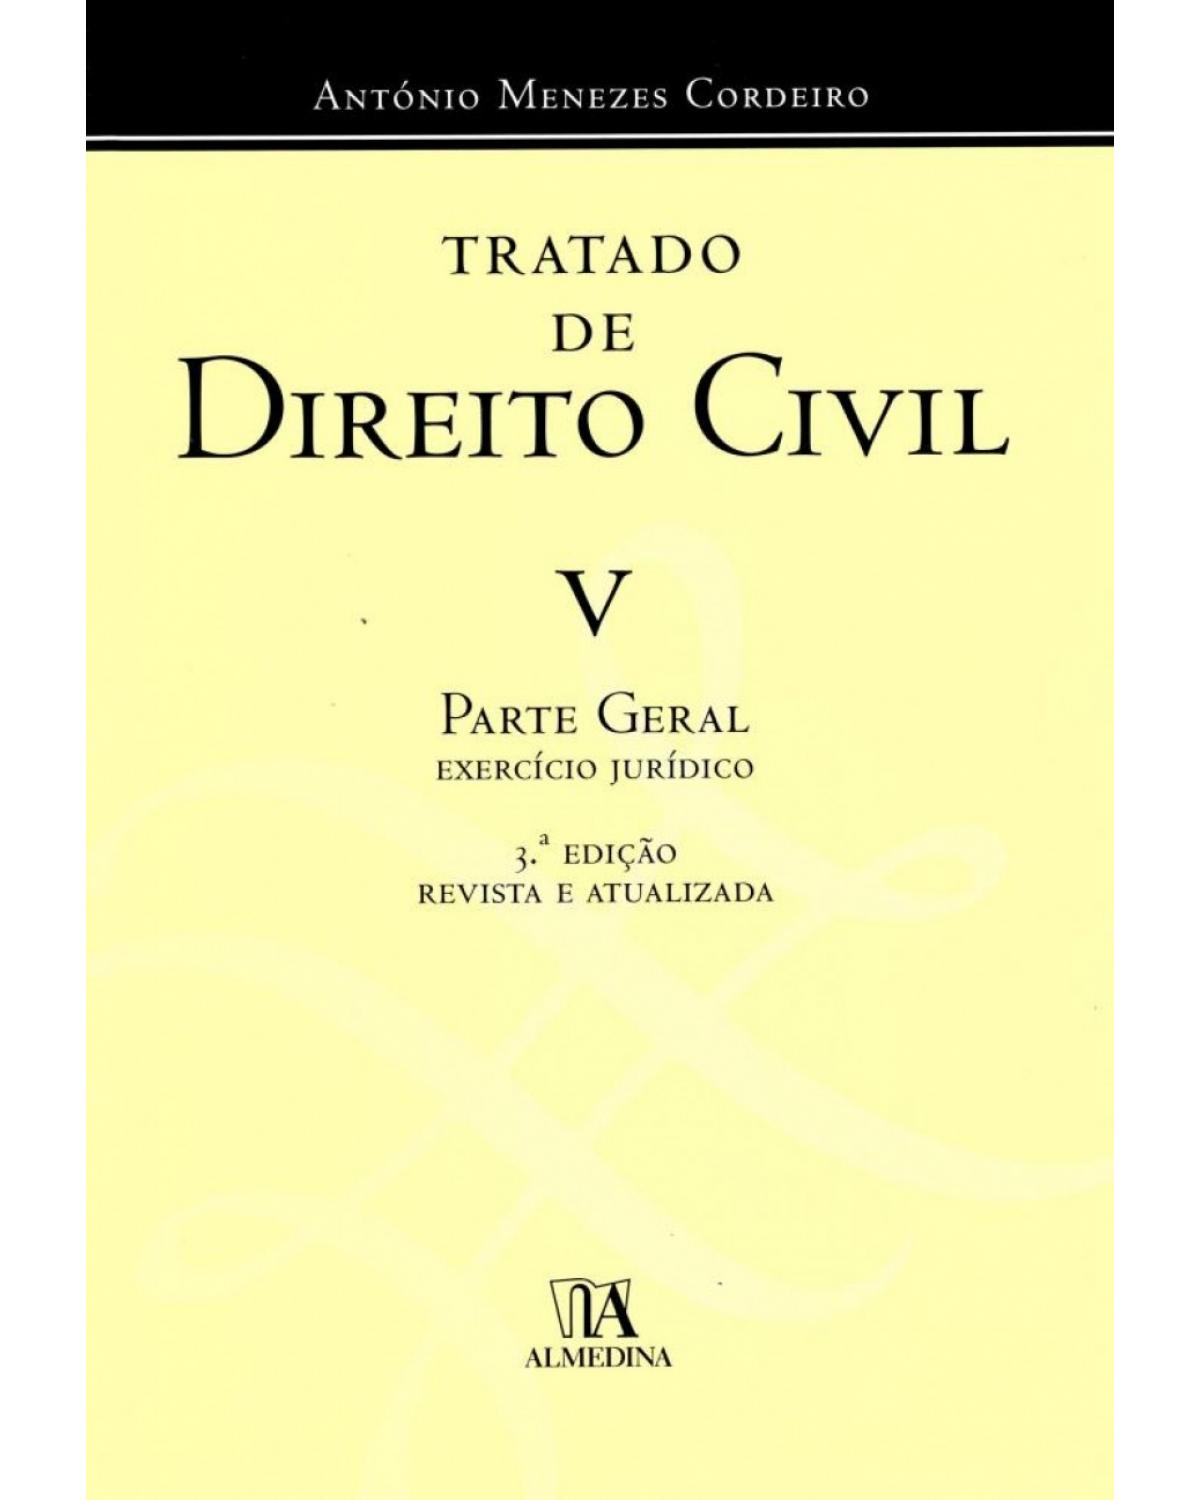 Tratado de direito civil - Volume 5: exercício jurídico - Parte geral - 3ª Edição | 2017